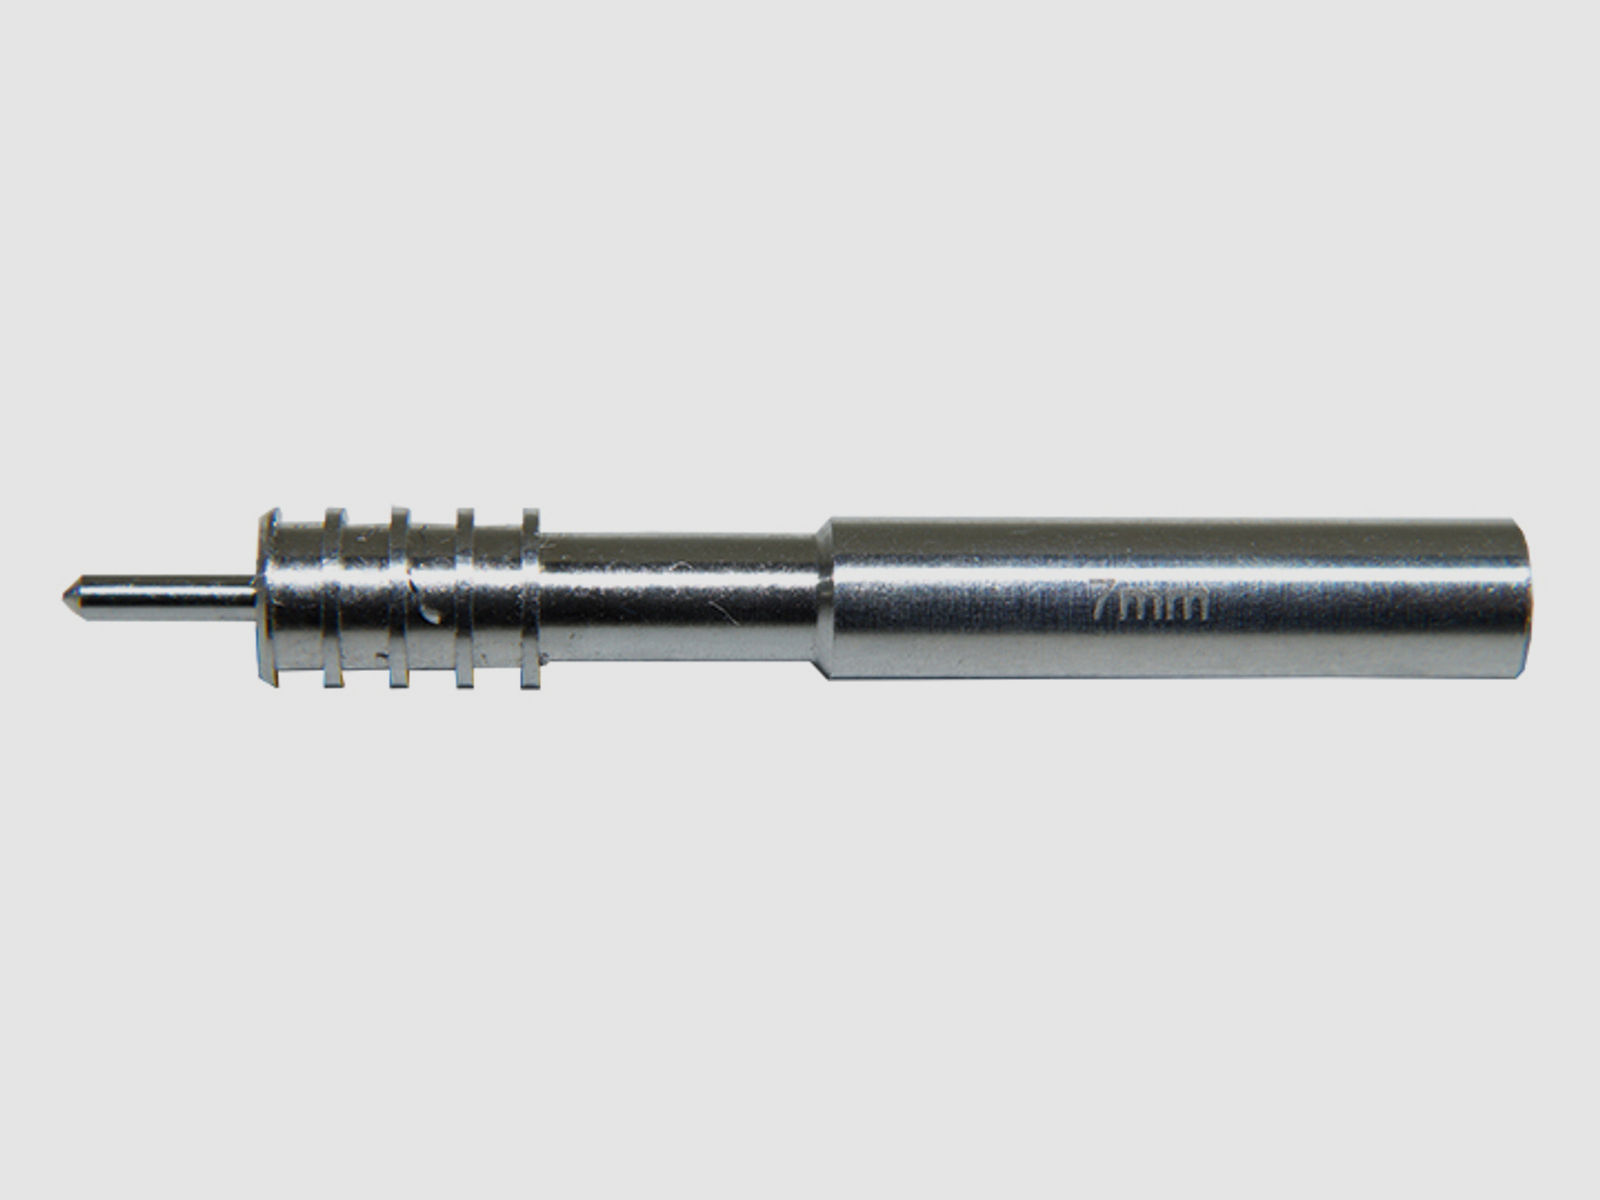 1 x BALLISTOL PATCH / JAGD Adapter Ø 7MM .284 Aluminium speziell für Mikrofaser-Patches 1/8'' Innen